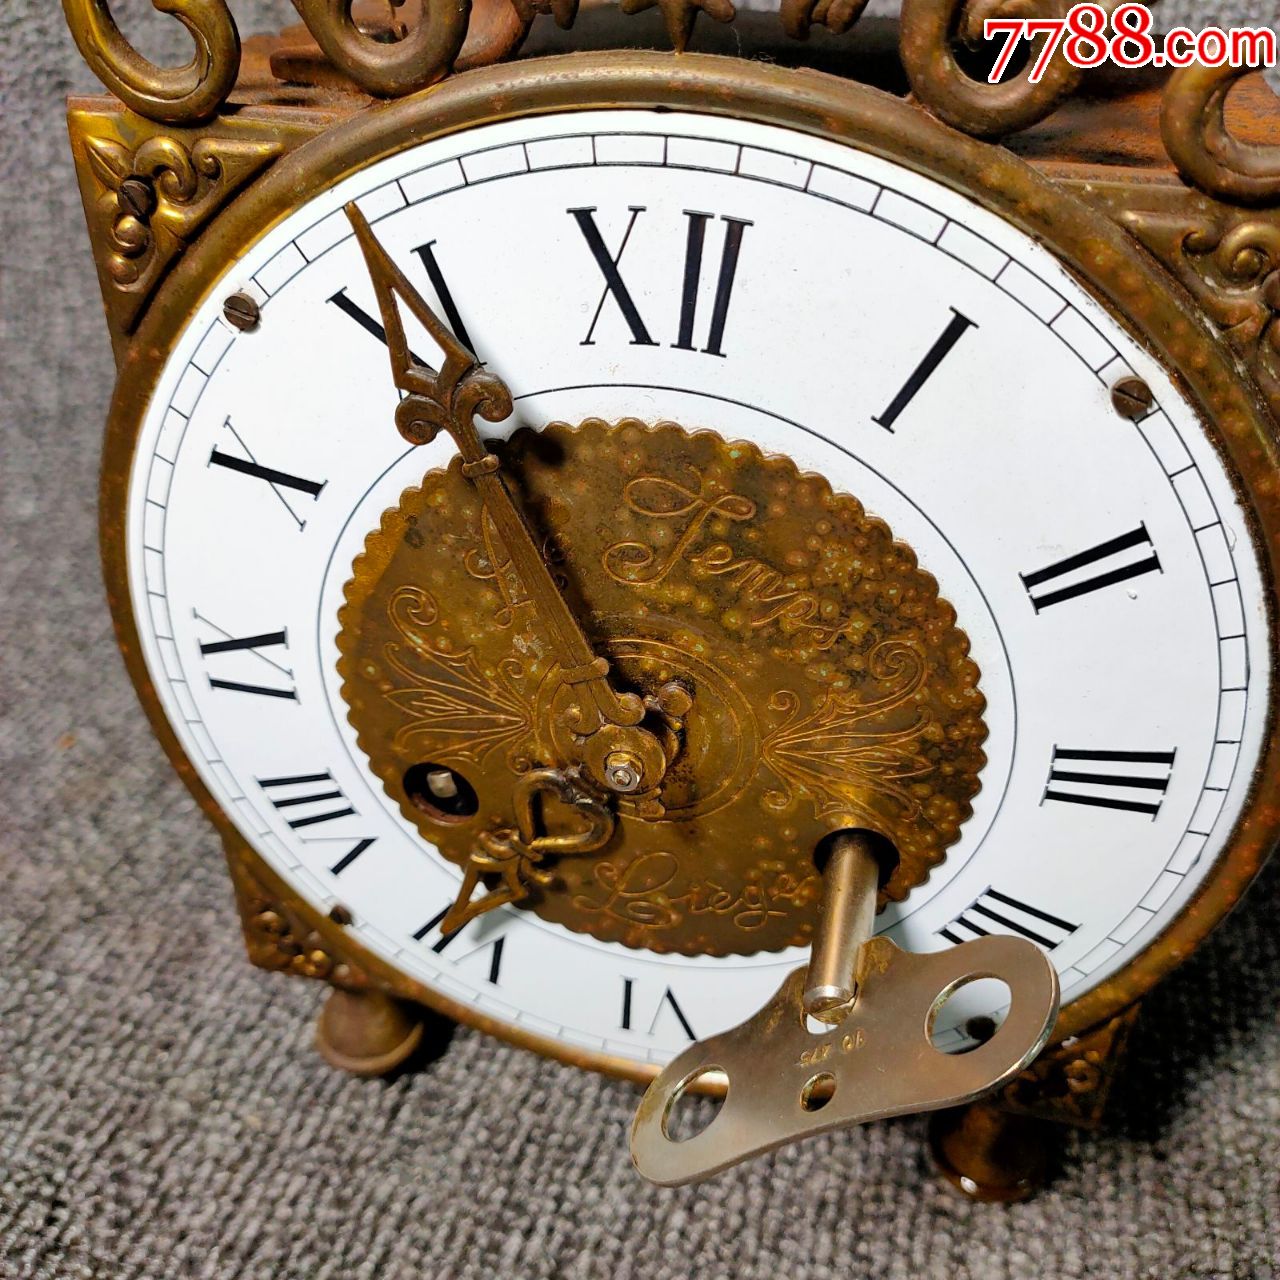 20世纪早期西洋古董发条座钟机械钟表壁炉钟稀有金属壳机械正常,座钟/